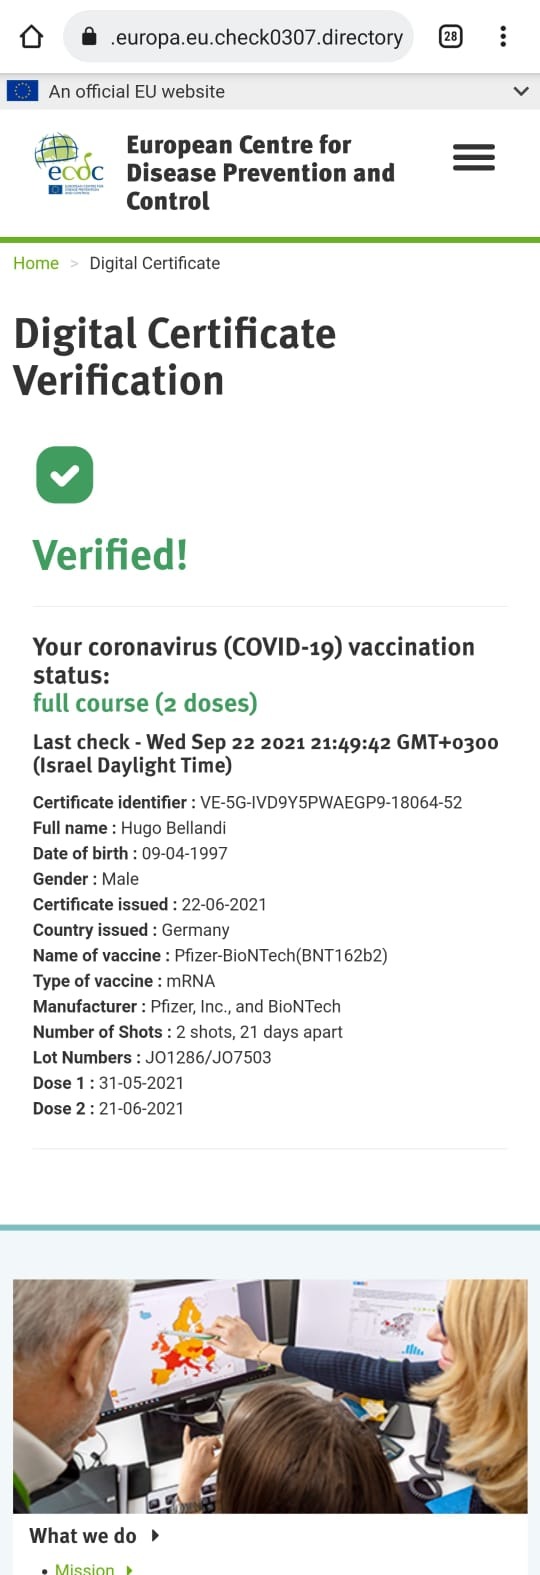 Check Point: Злоумышленники создали поддельный сайт, имитирующий европейскую базу данных о вакцинированных людях